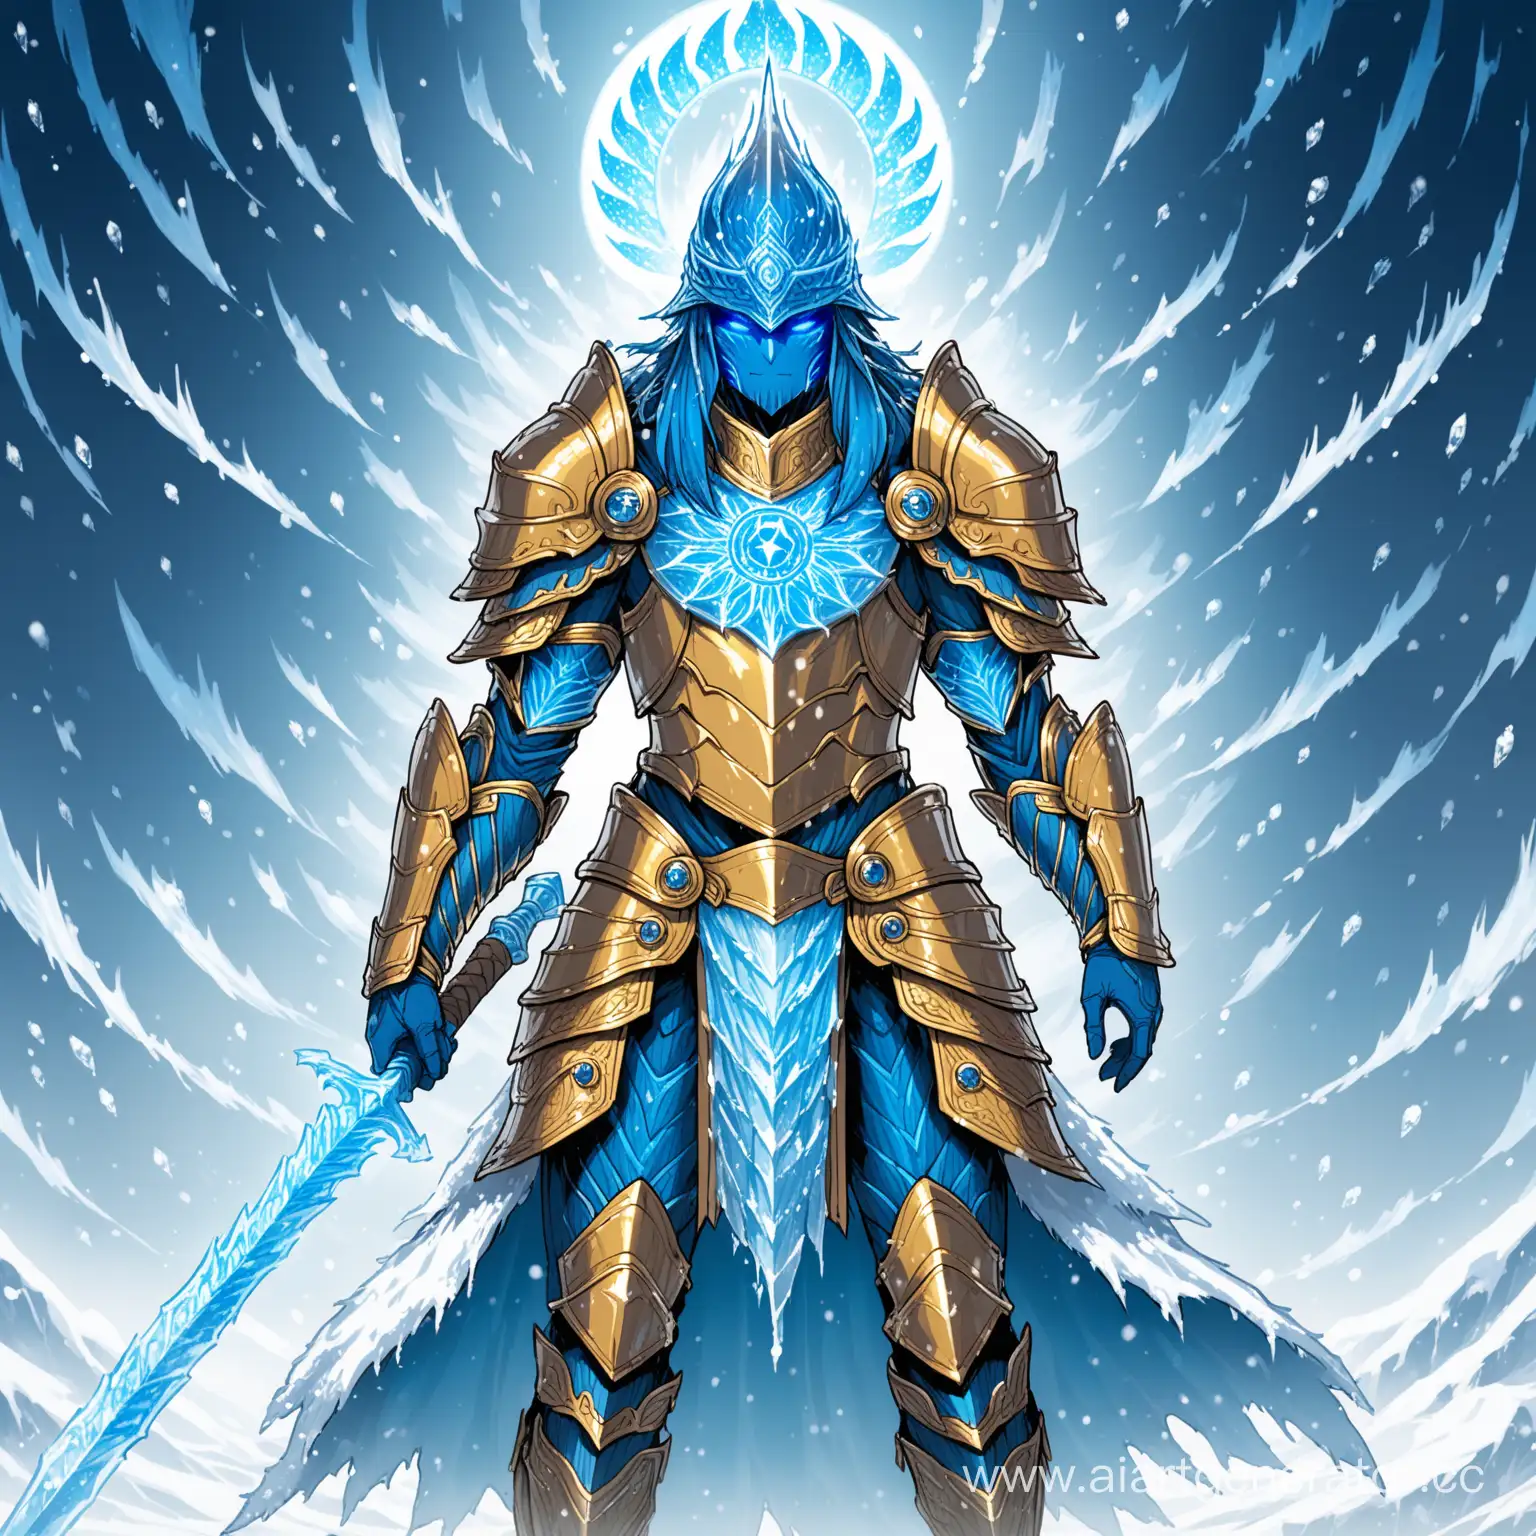 Frozen-Halo-Blue-Spirit-Warrior-in-FrostCovered-Armor